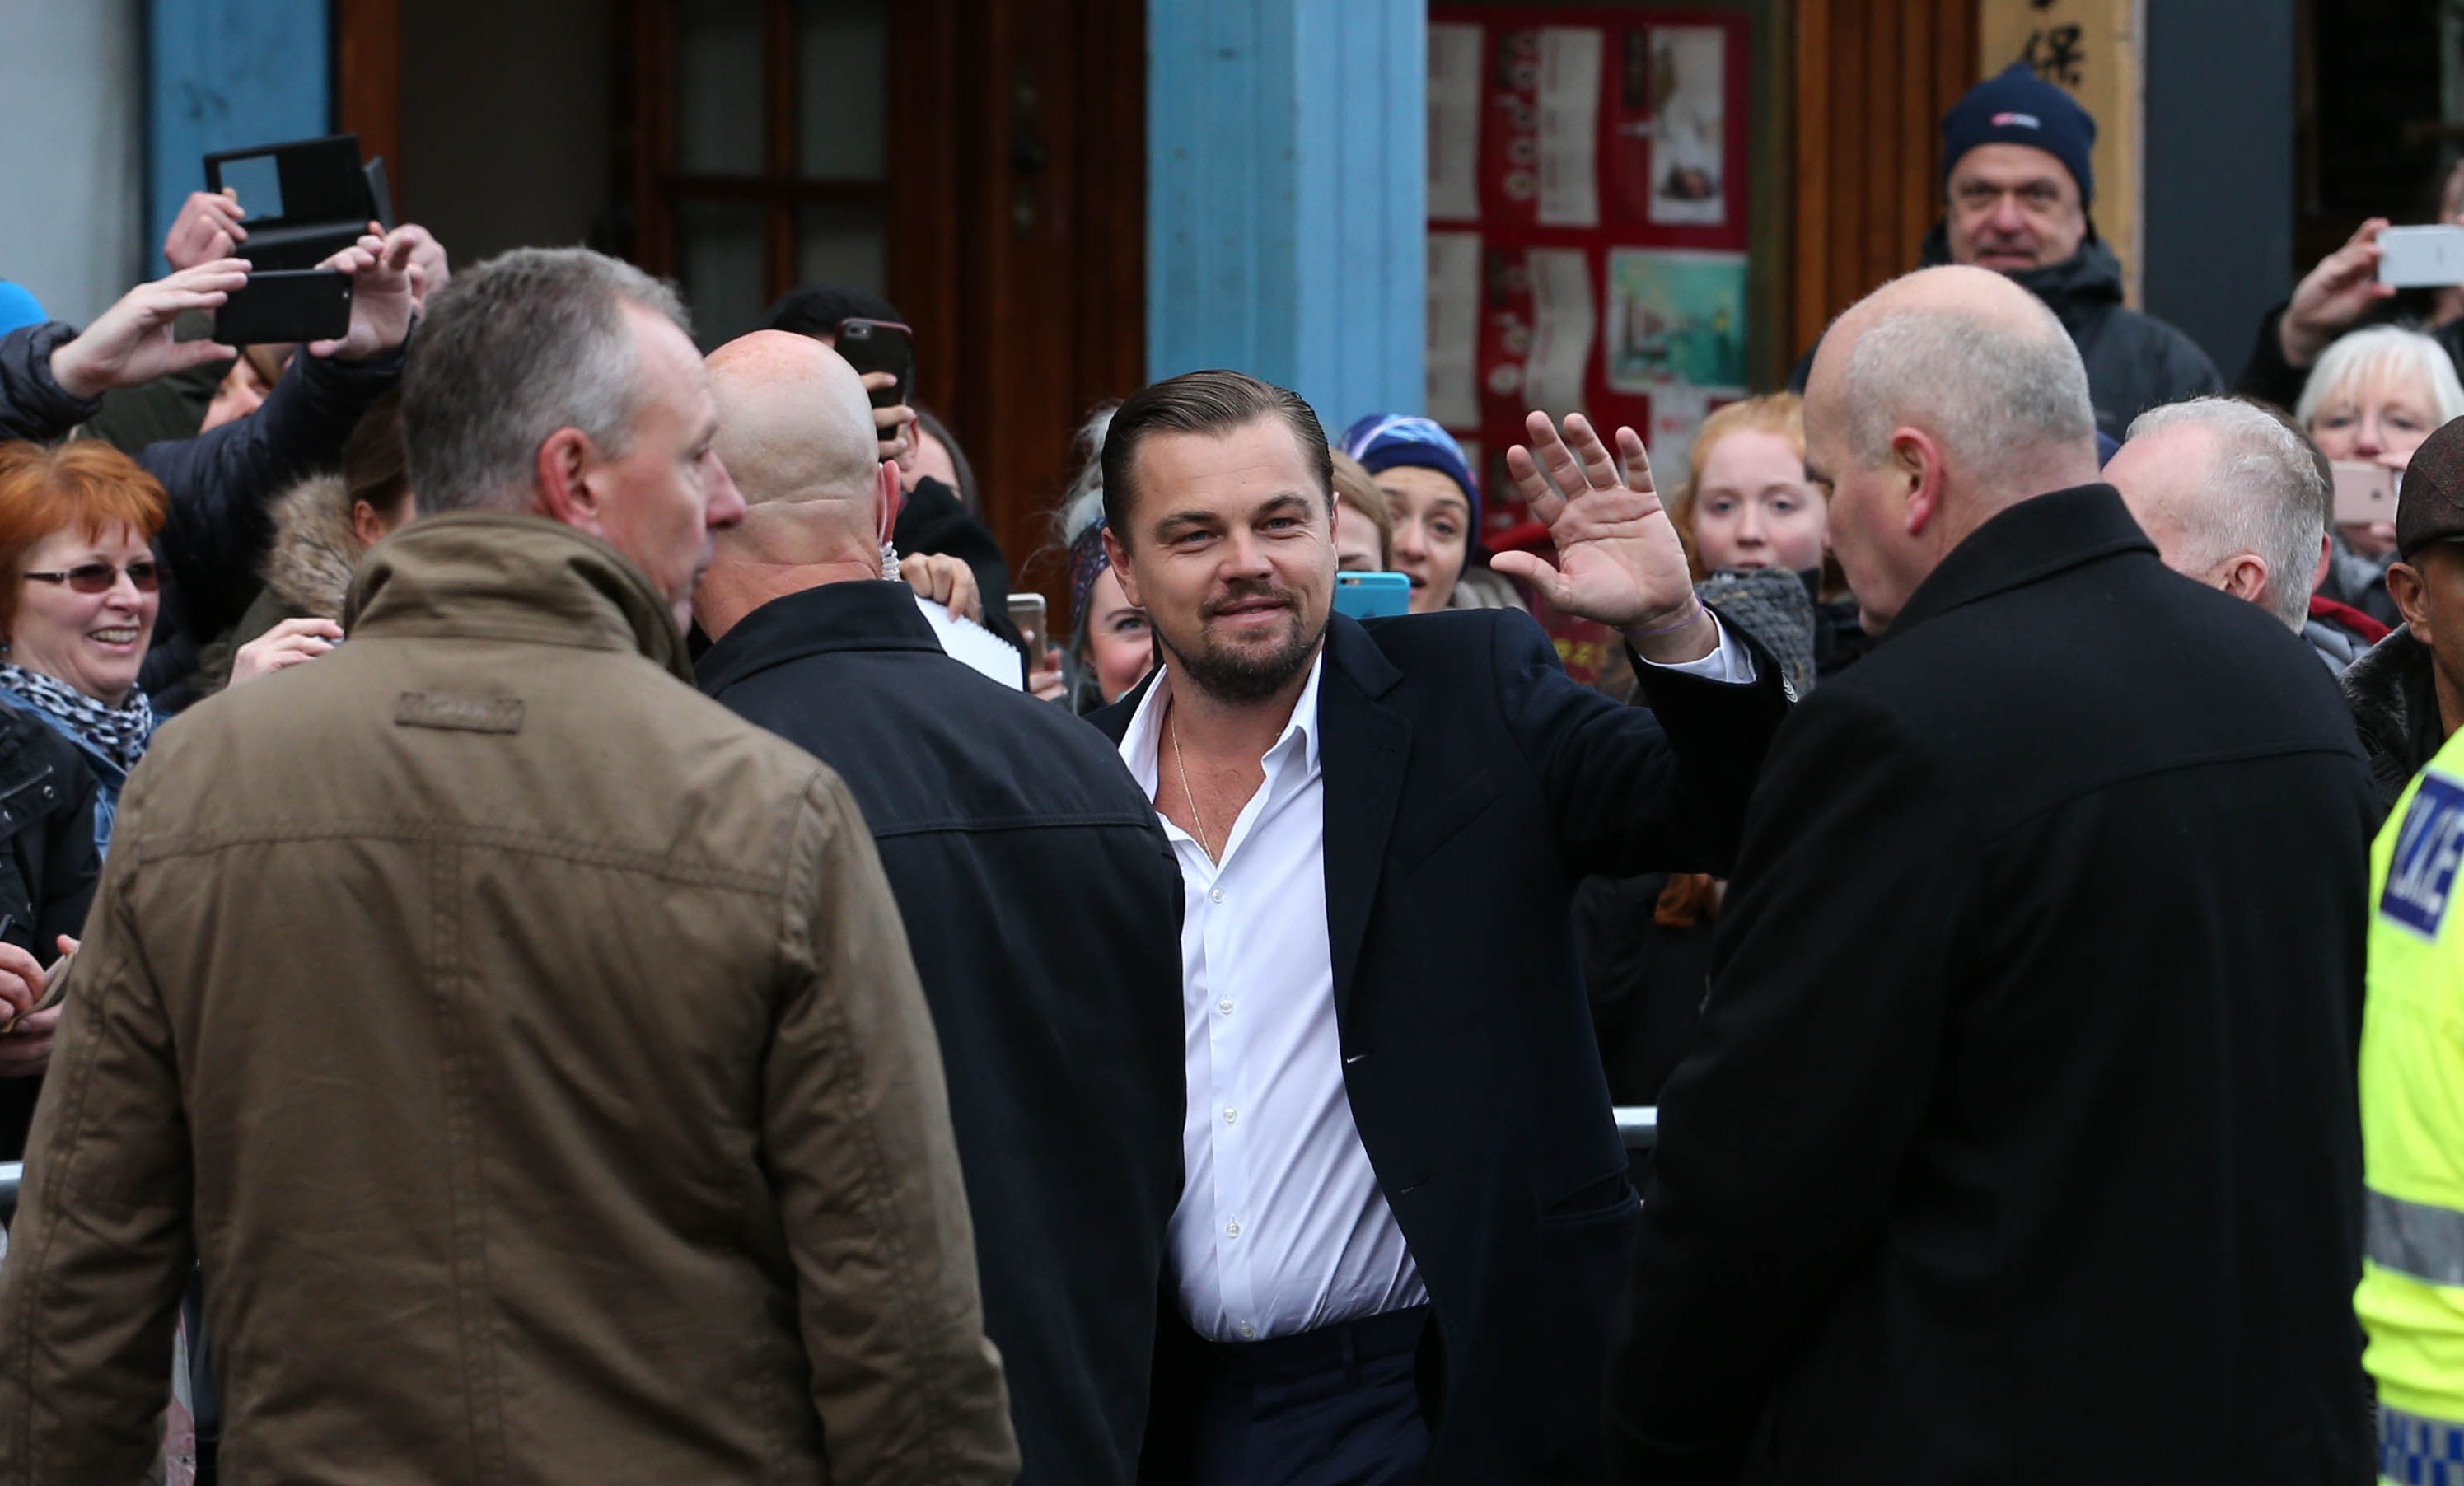 Leonardo DiCaprio arrives at the Social Bite cafe.